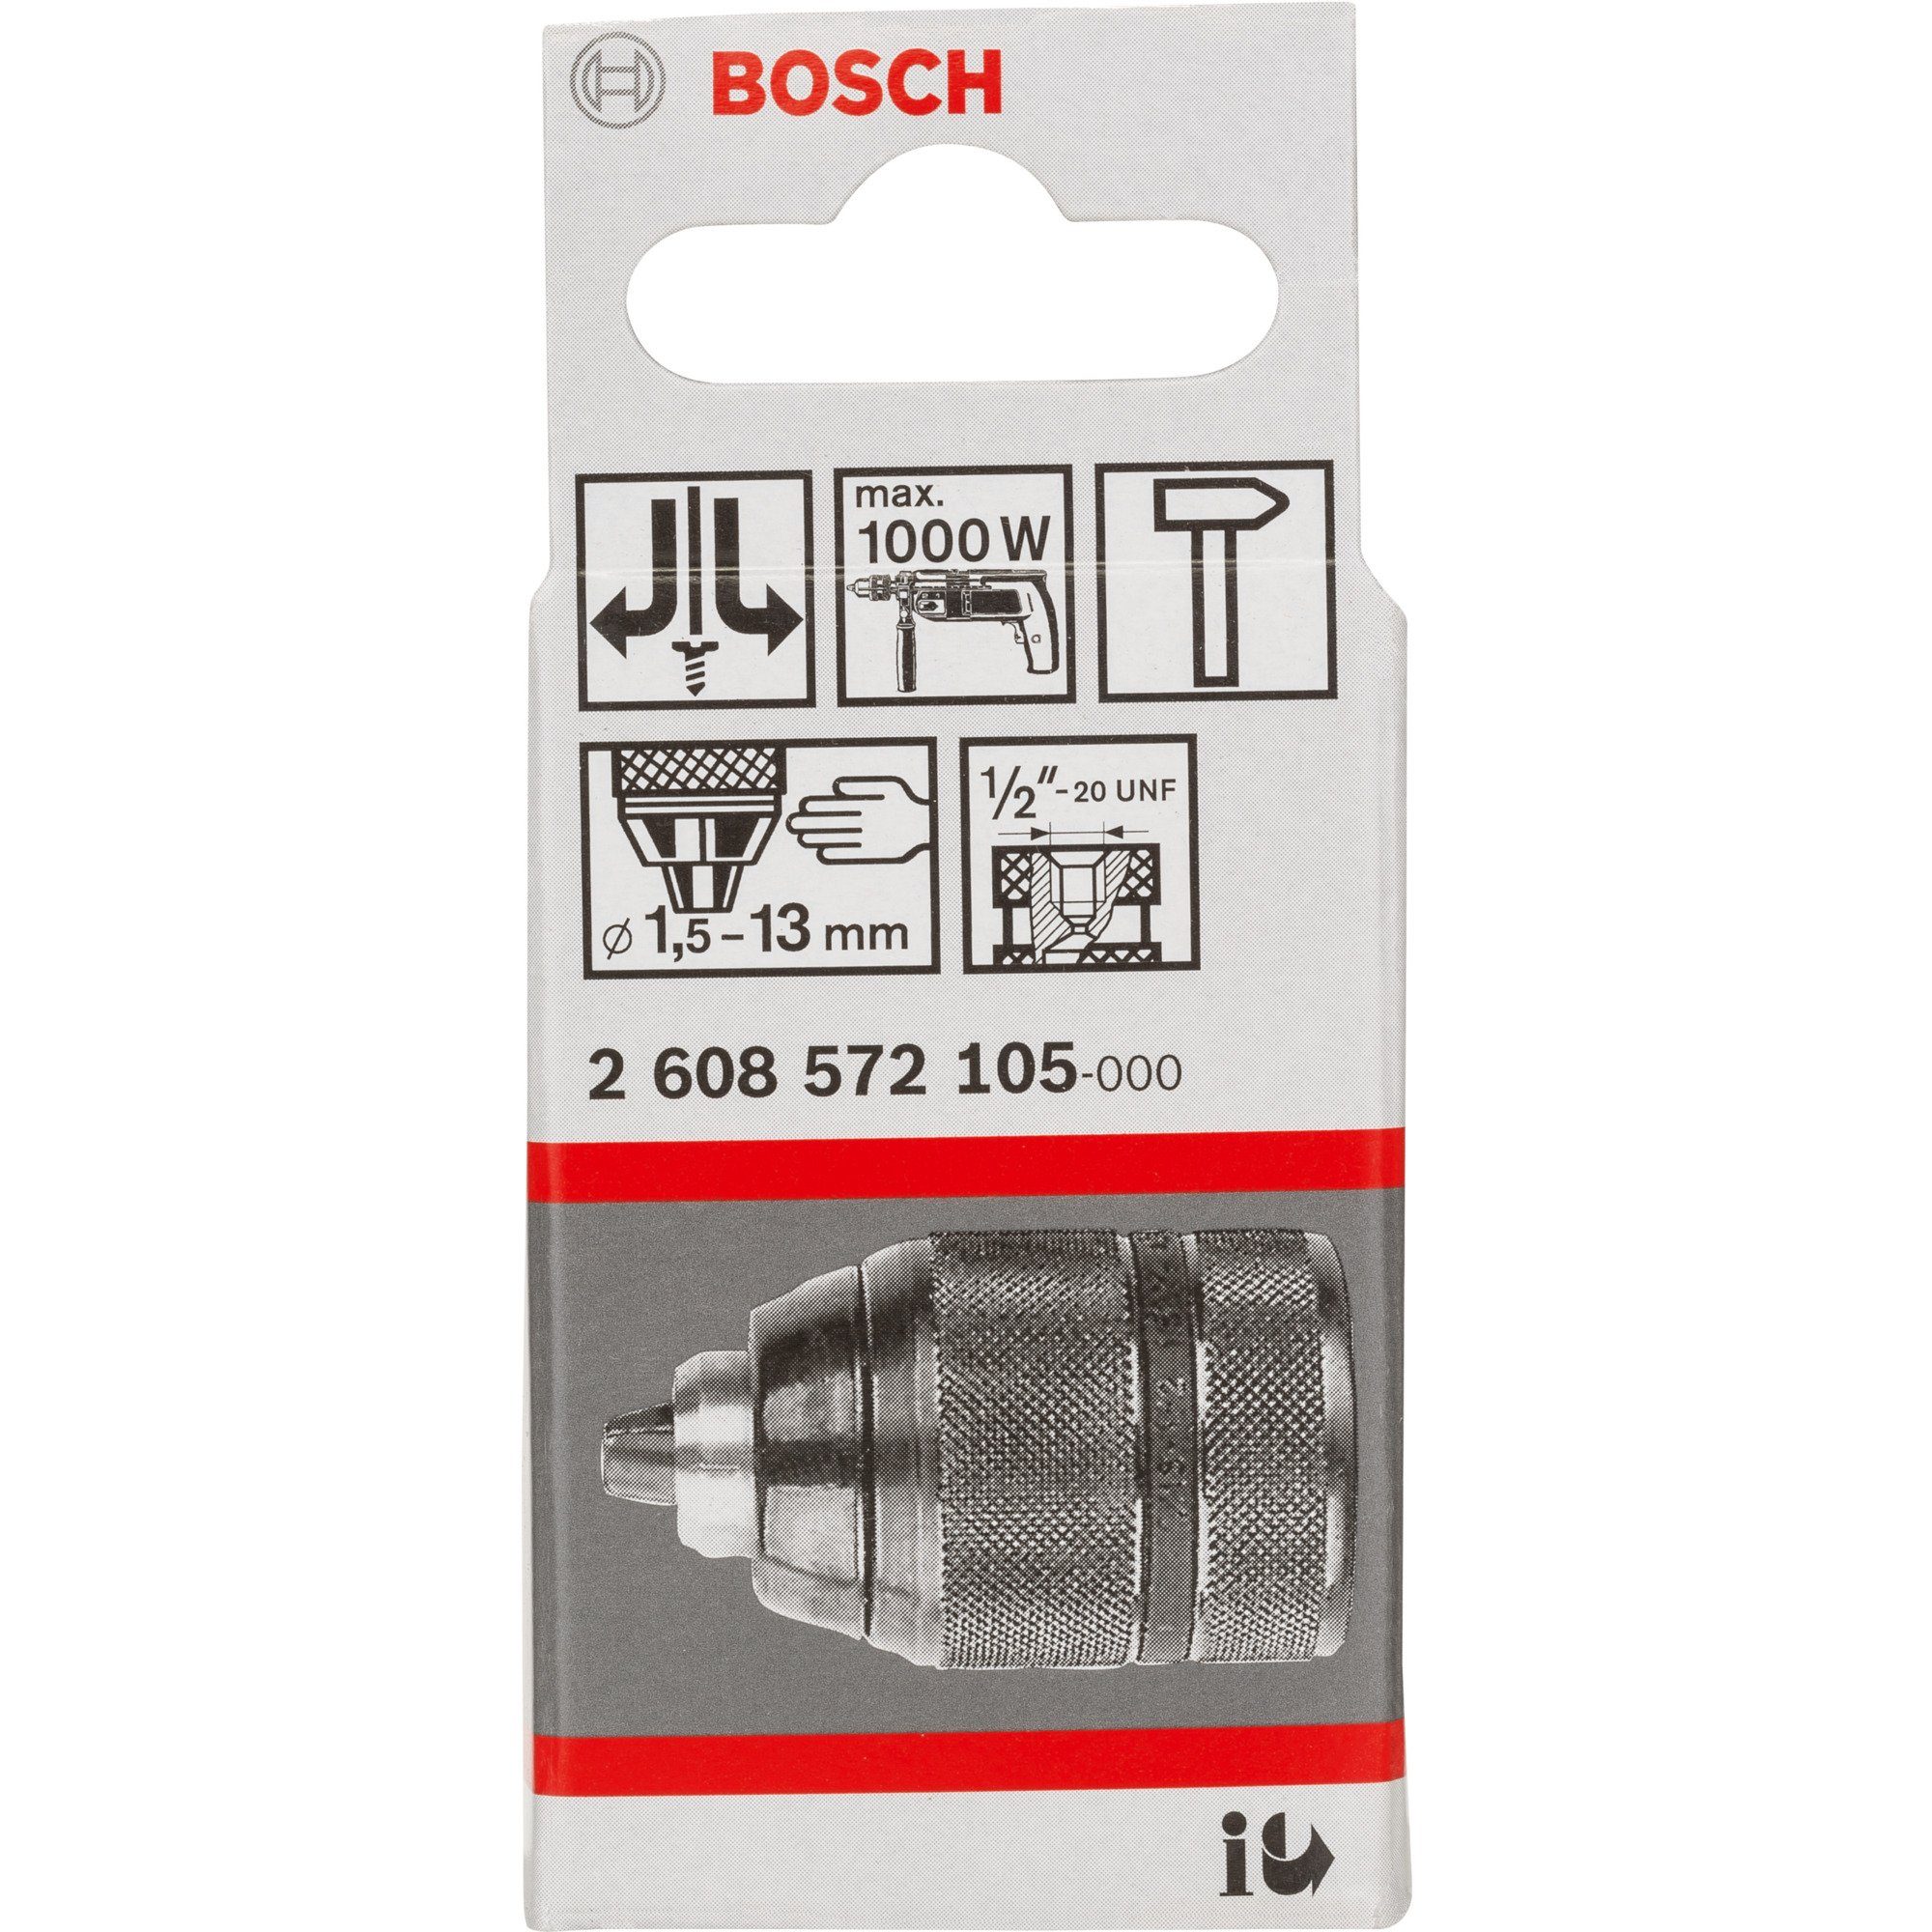 BOSCH und Bohrer- Professional Bosch Bitset Schnellspannbohrfutter